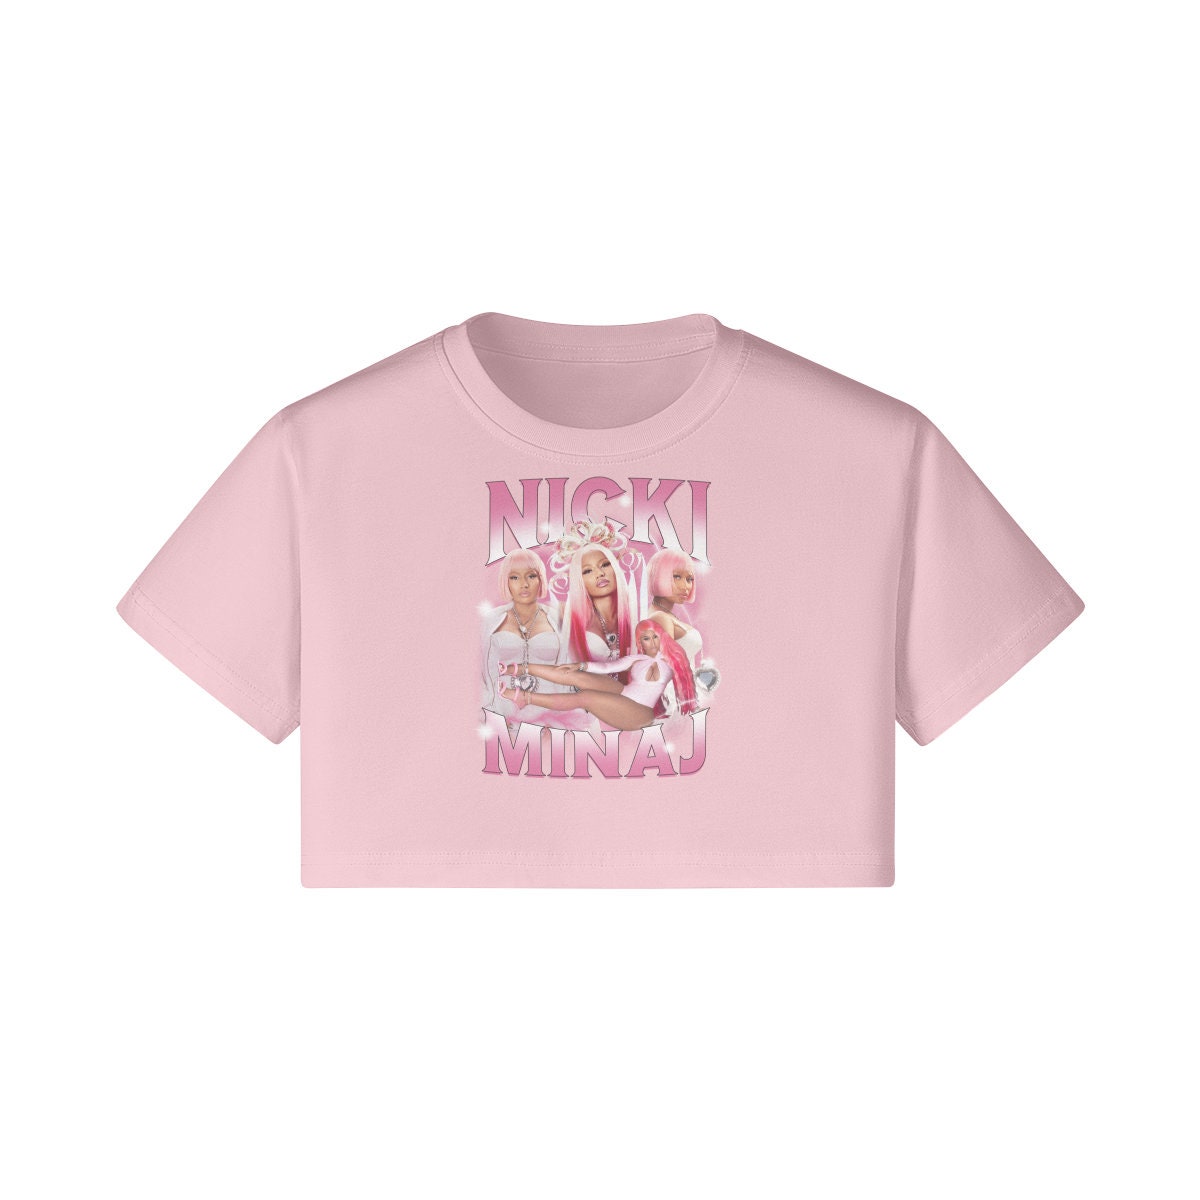 Nicki Minaj Crop Top Shirt Nicki Rapper Singer Minaj Band  Shirt